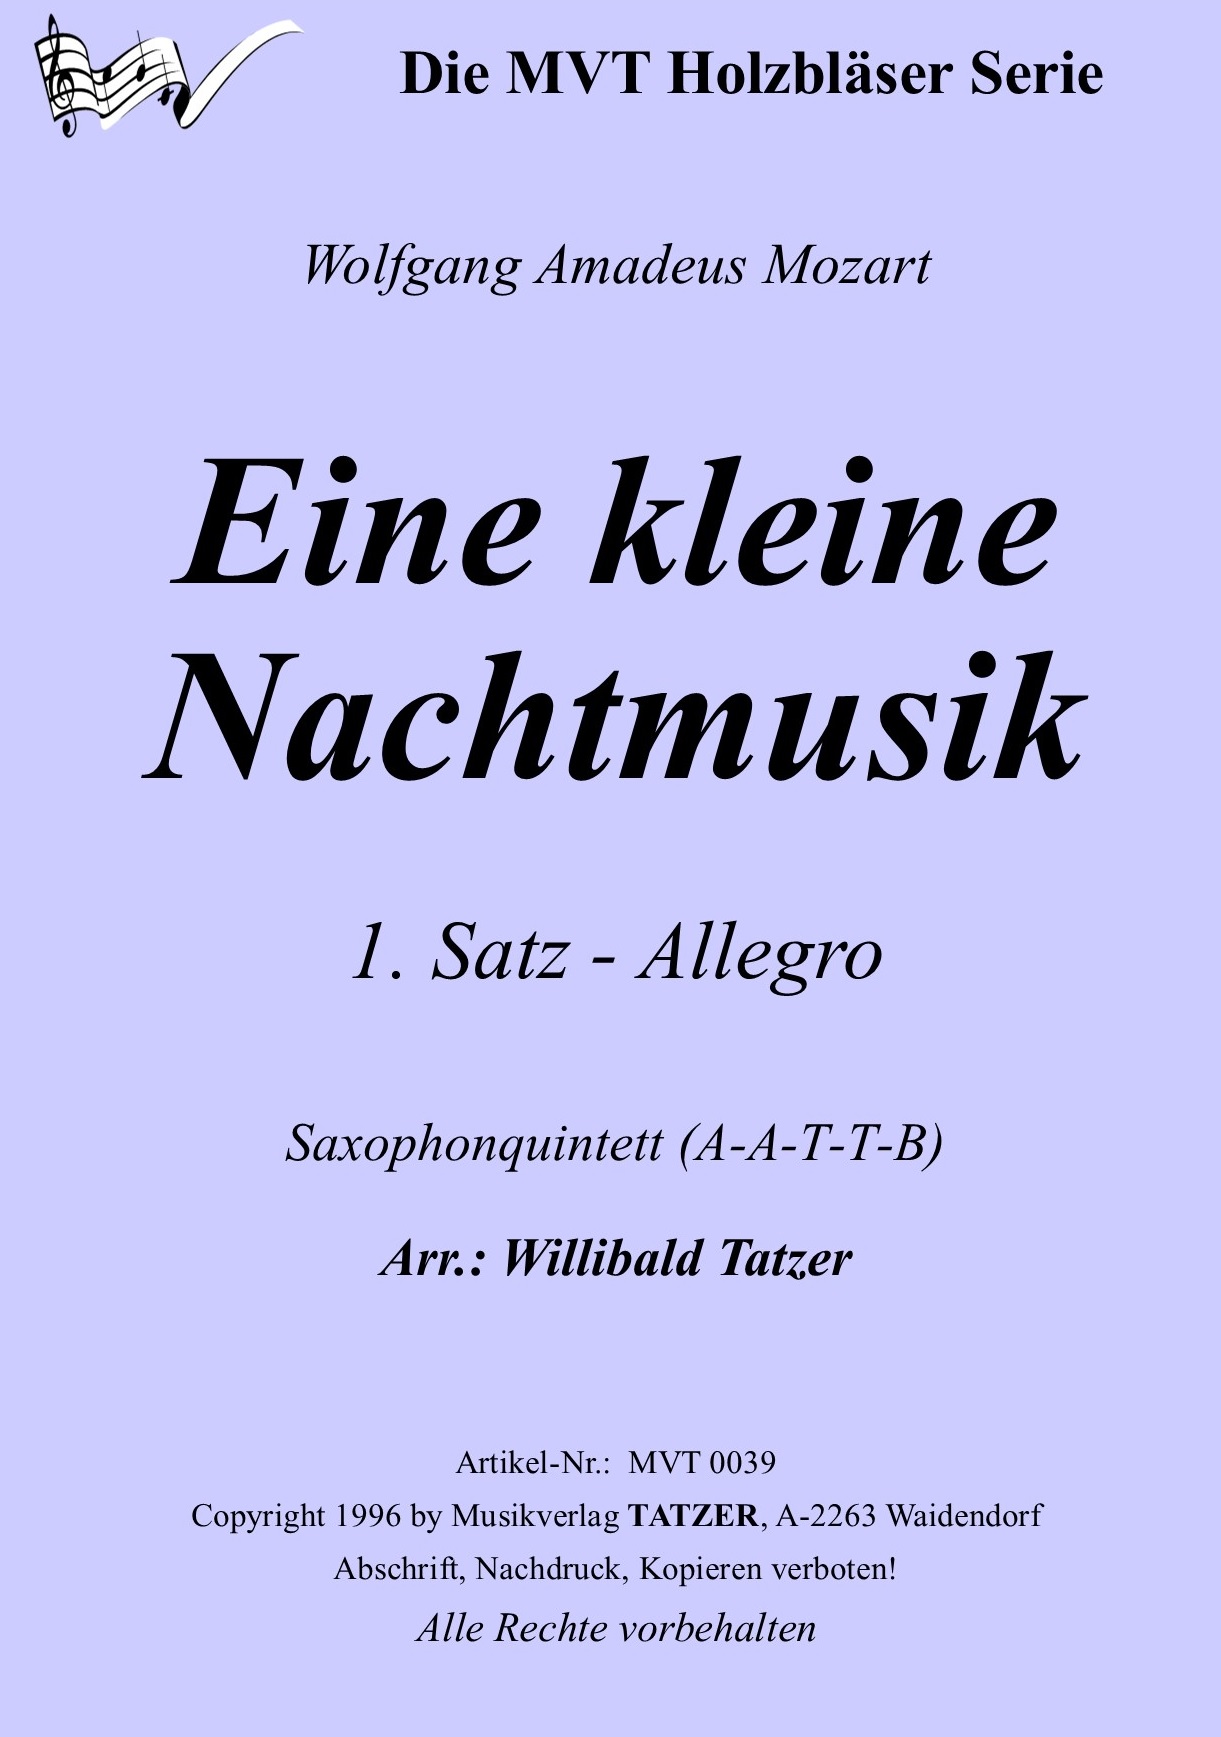 Eine kleine Nachtmusik (B), Wolfgang Amadeus Mozart / Willibald Tatzer